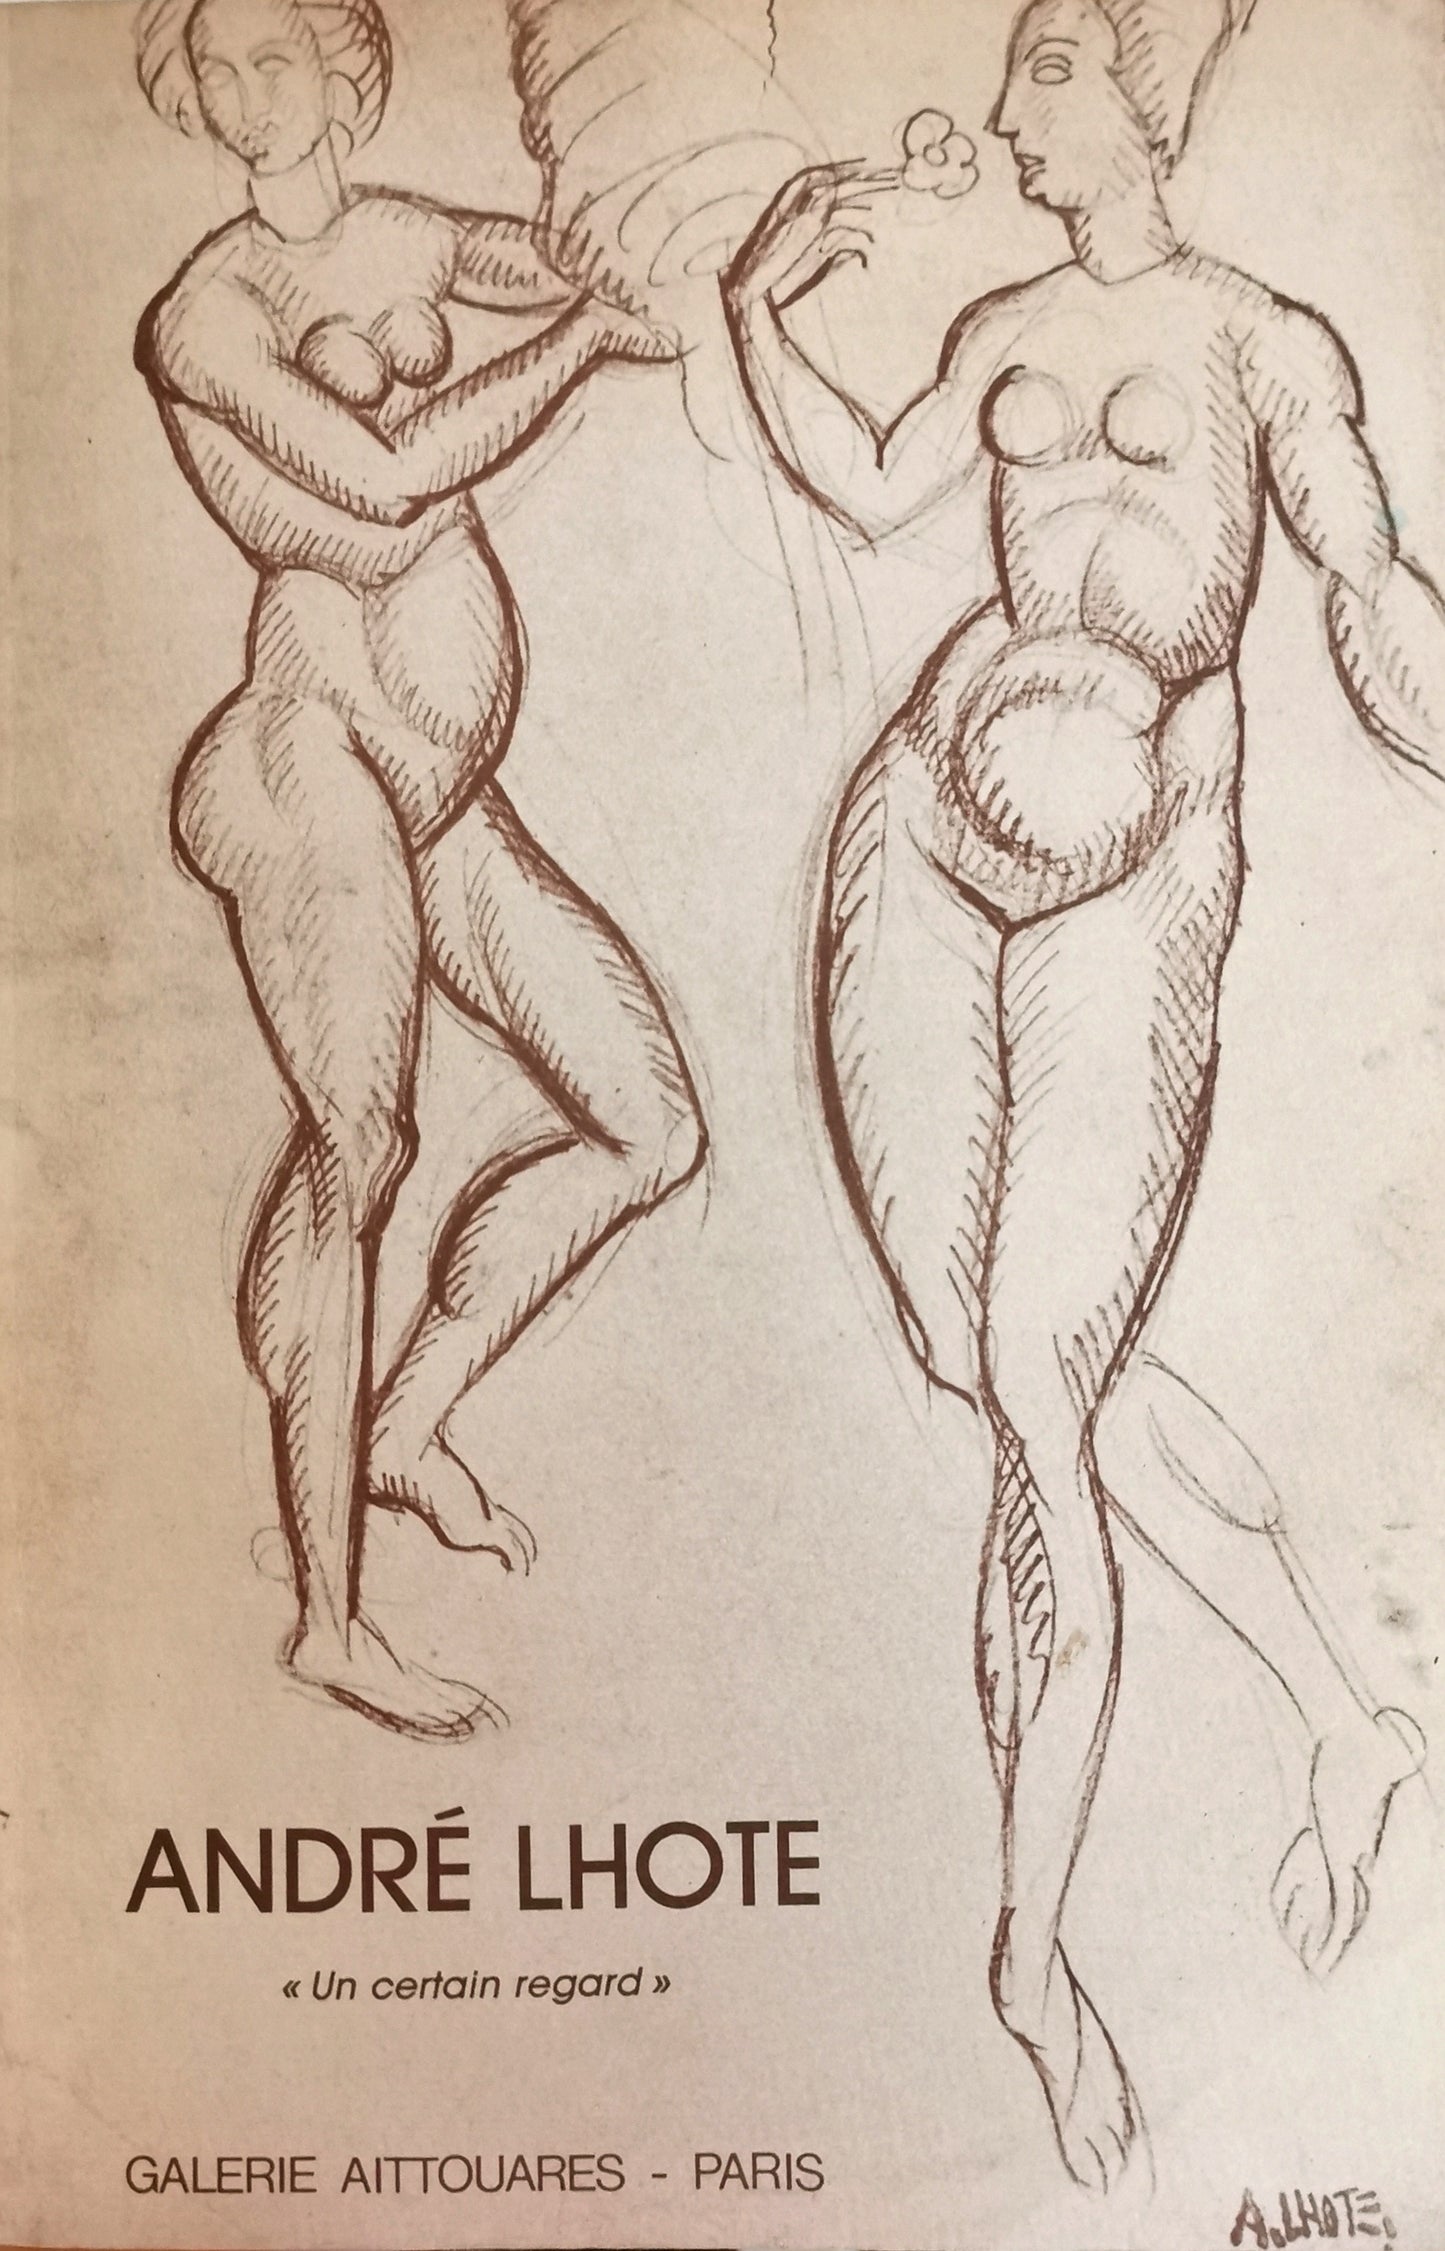 André Lhote "Un certain regard", Dessins anciens - aquarelles - peintures [exposition Galerie Aittouares, 21 mars-20 avril 1985], Francis Warin, Galerie Aittouares, 1985.